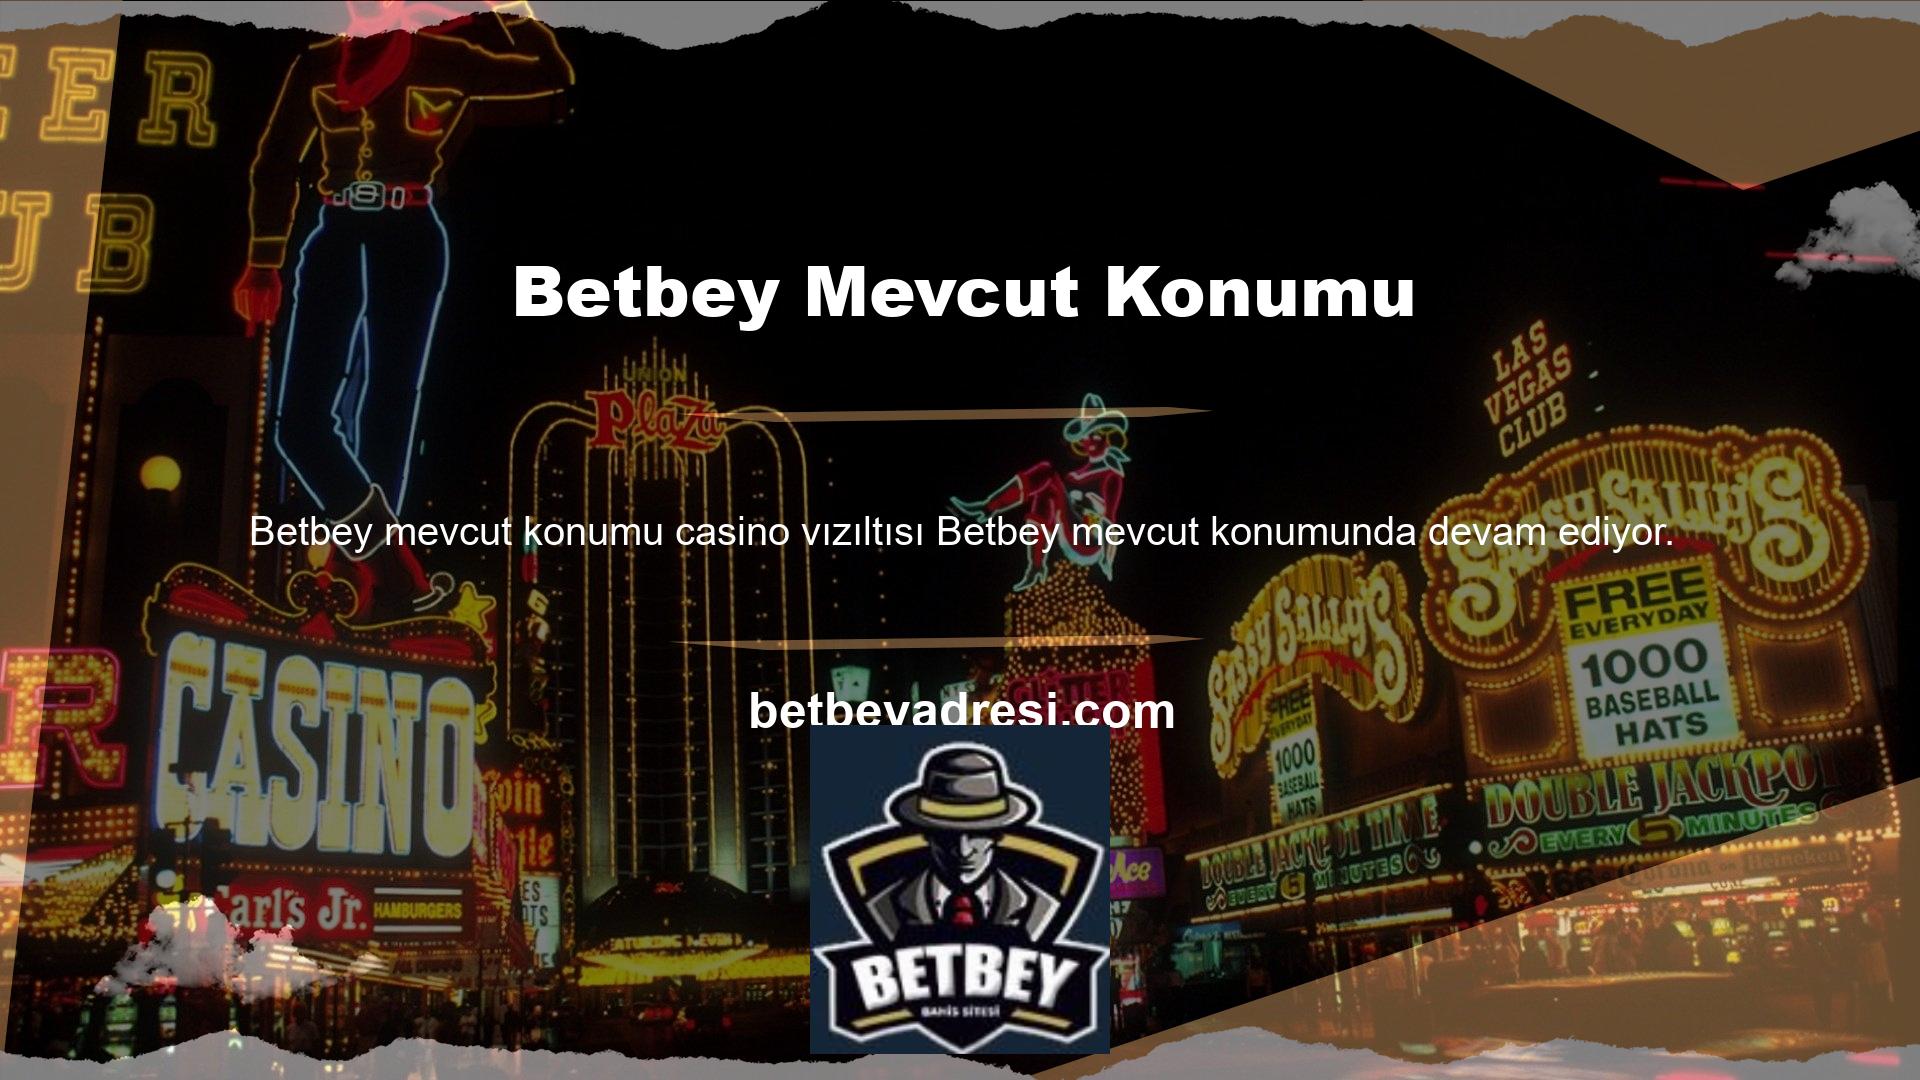 Betbey aynı zamanda en eğlenceli casino oyunlarına ve en eğlenceli slot makinelerine de sahiptir